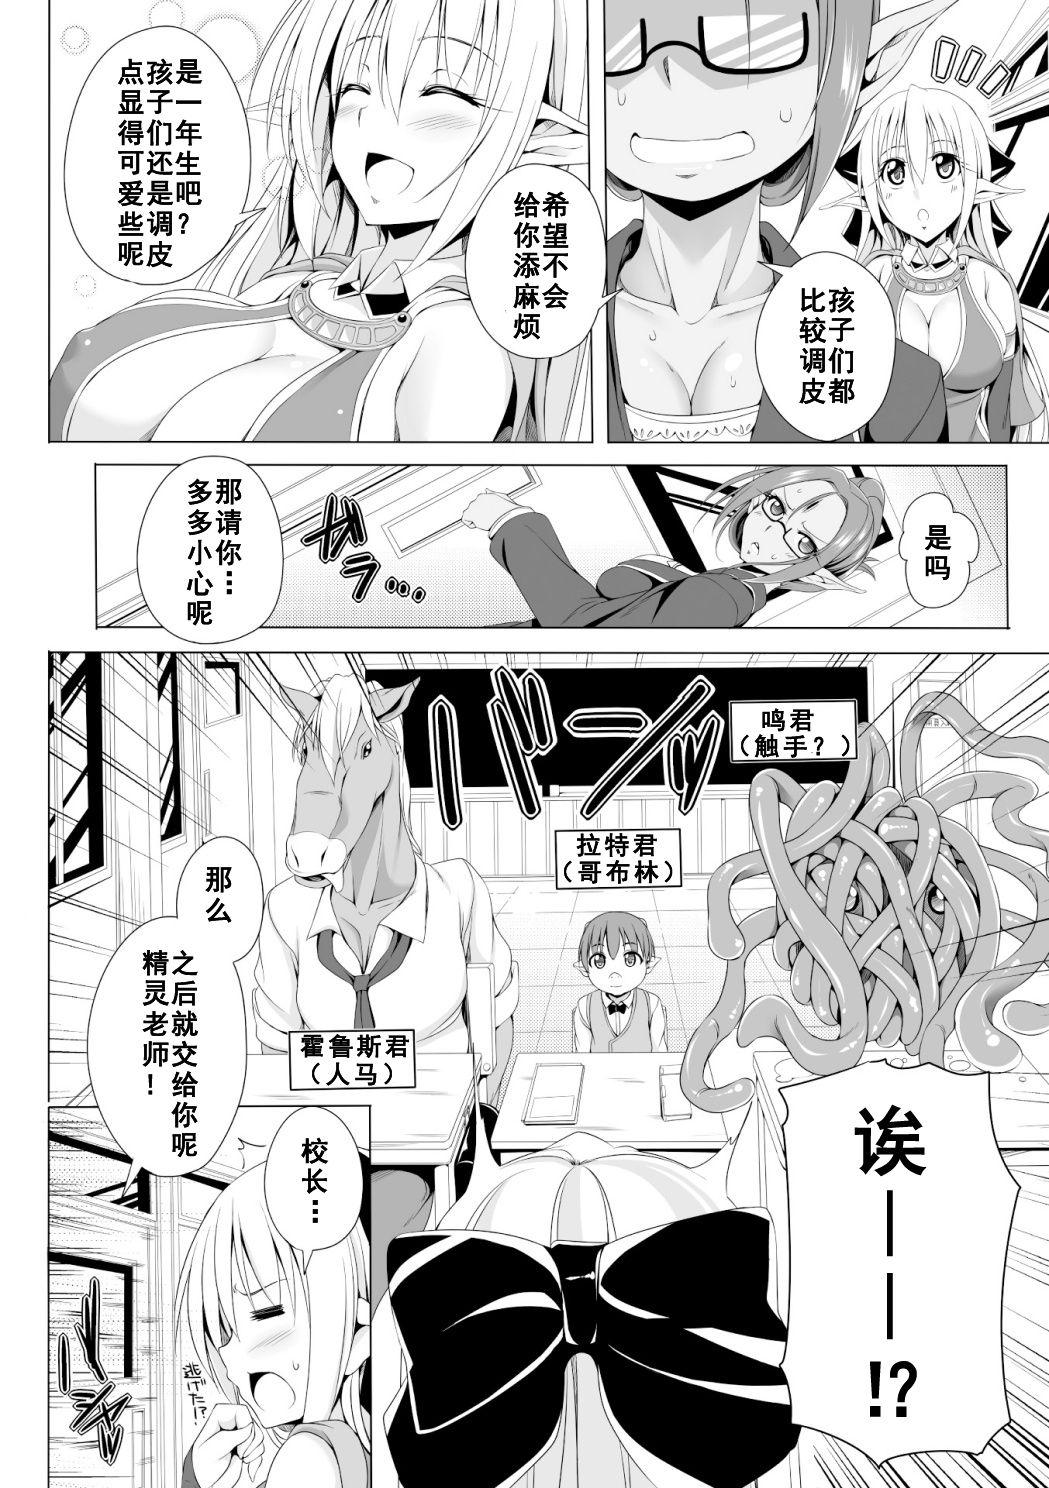 Shesafreak Eris Sensei no Gakkyuu Houkai Teen Sex - Page 2